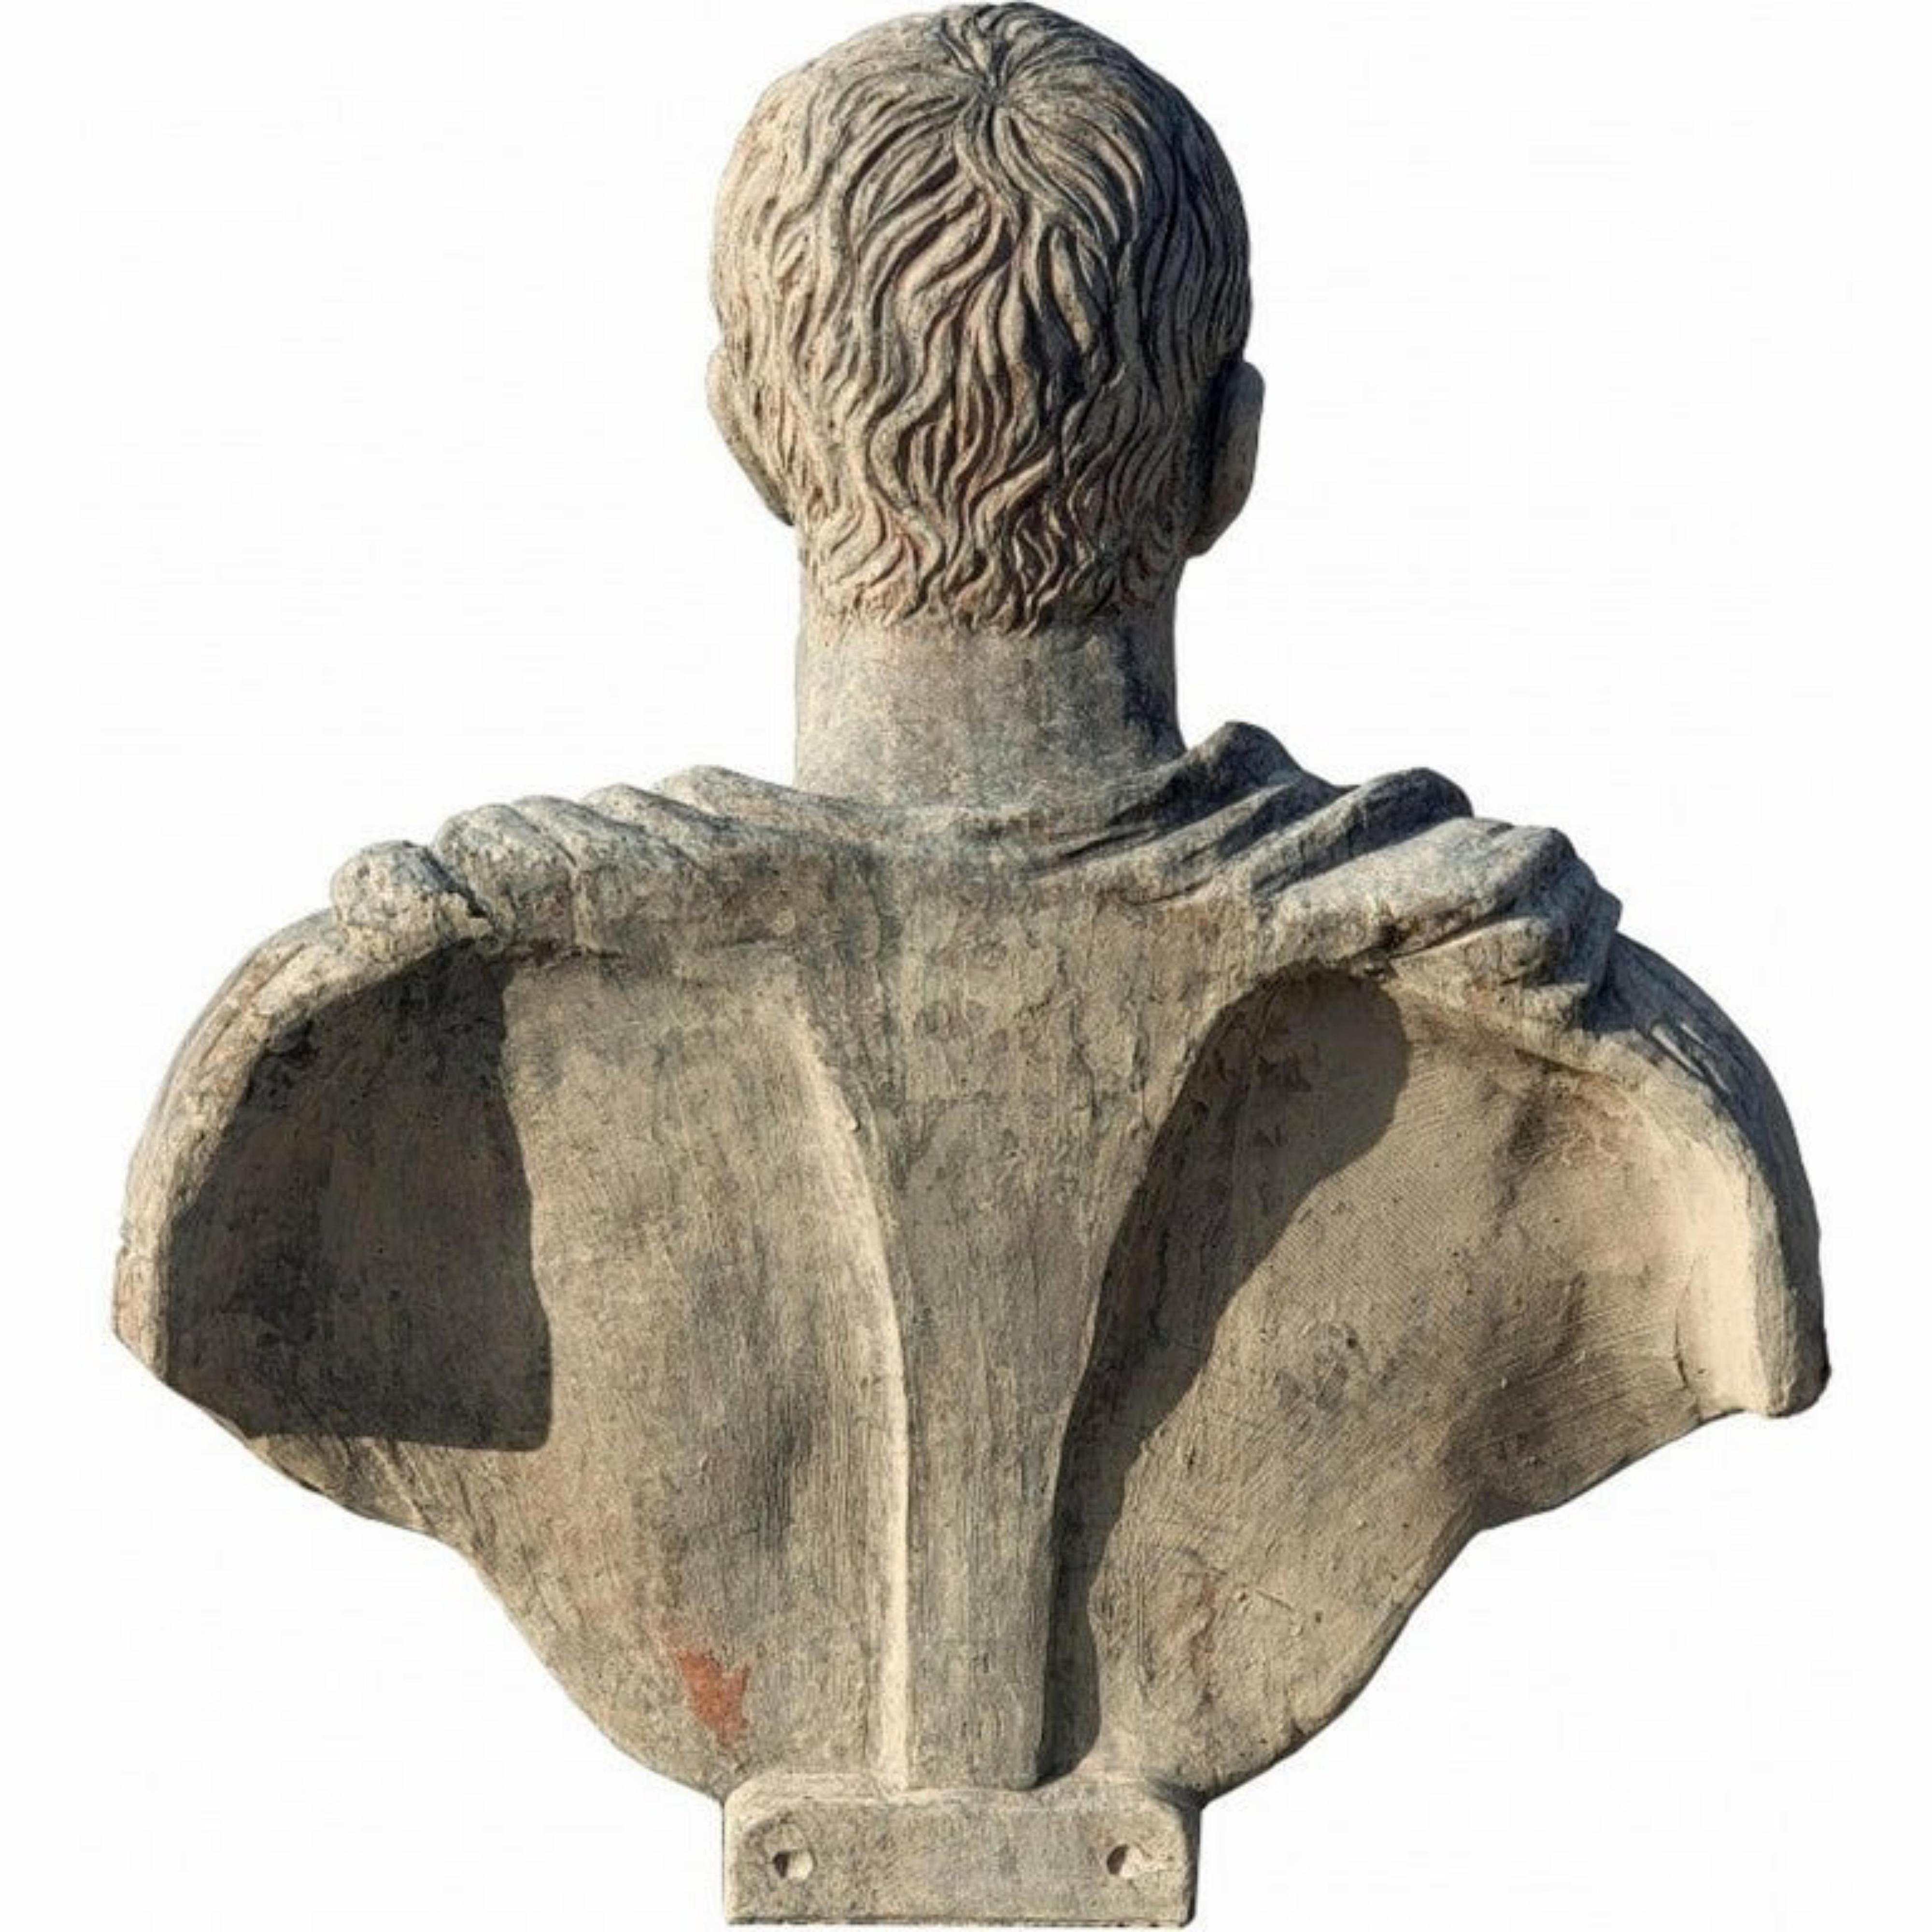 Julius Caesar - Terrakotta - Kopie einer römischen Statue aus den Vatikanischen Museen
Anfang des 20. Jahrhunderts
Terrakotta-Büste von Julius Caesar 50-30 v. Chr.
Diese Büste ist dem Originalabguss einer Büste aus den Vatikanischen Museen